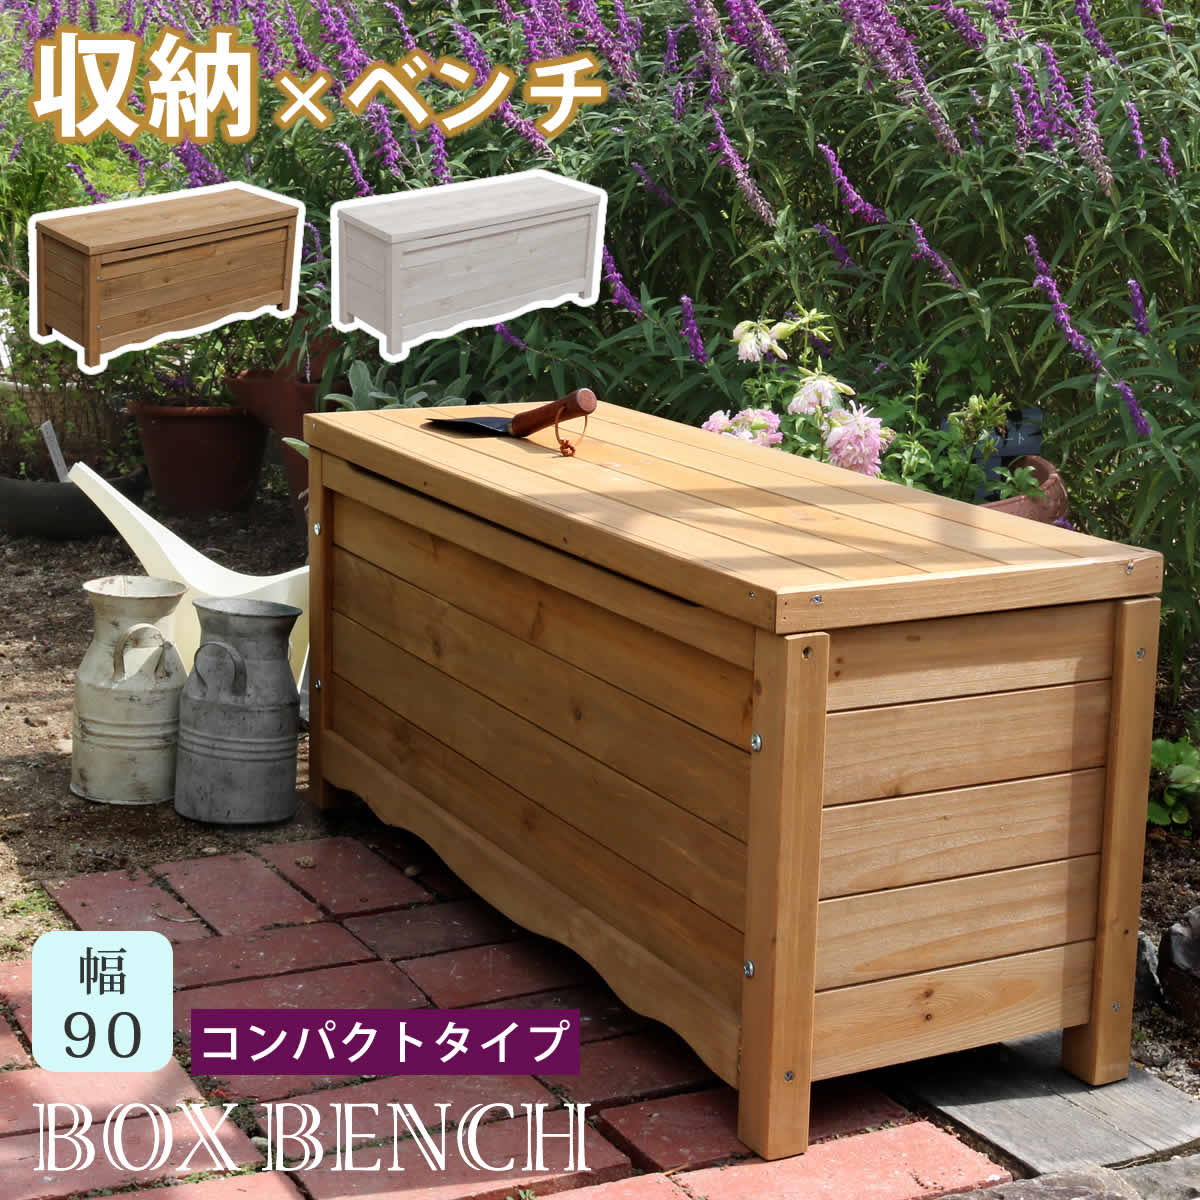 天然木製 ボックスベンチ コンパクト 幅90 送料無料 スツール 木製 椅子 収納 倉庫 ウッドボックス 物置 庭 物入れ …